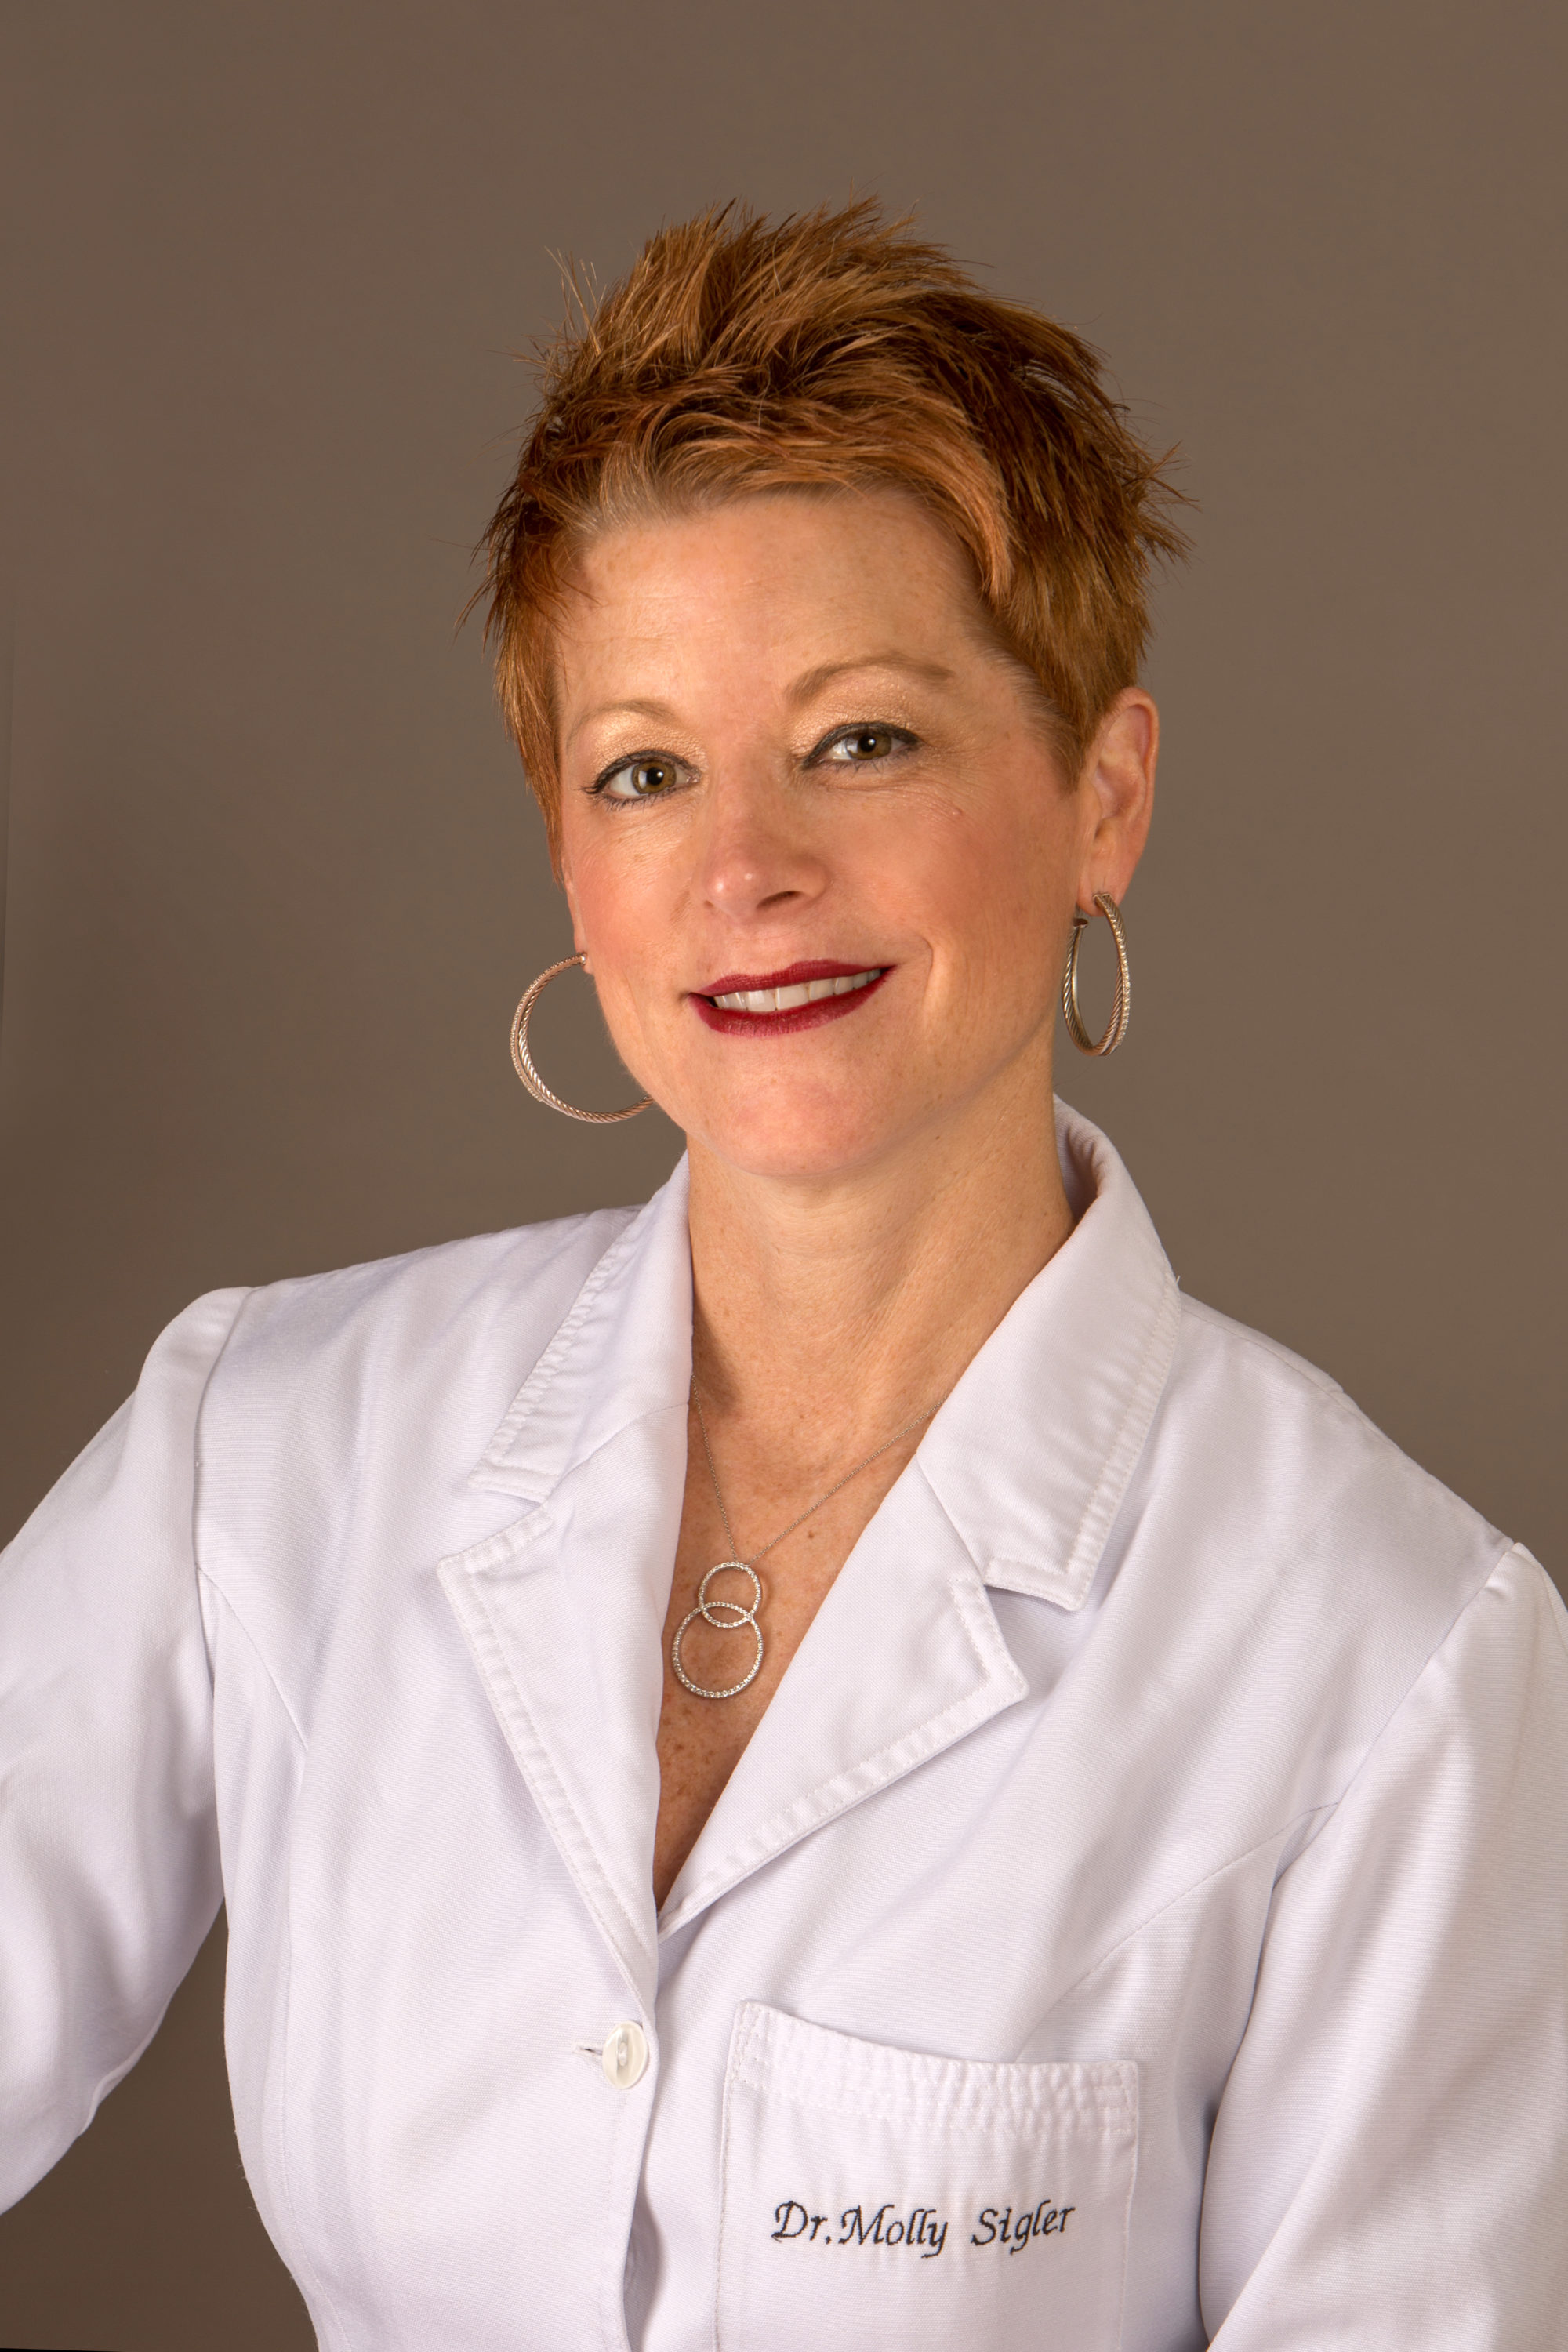 Dr. Molly Sigler